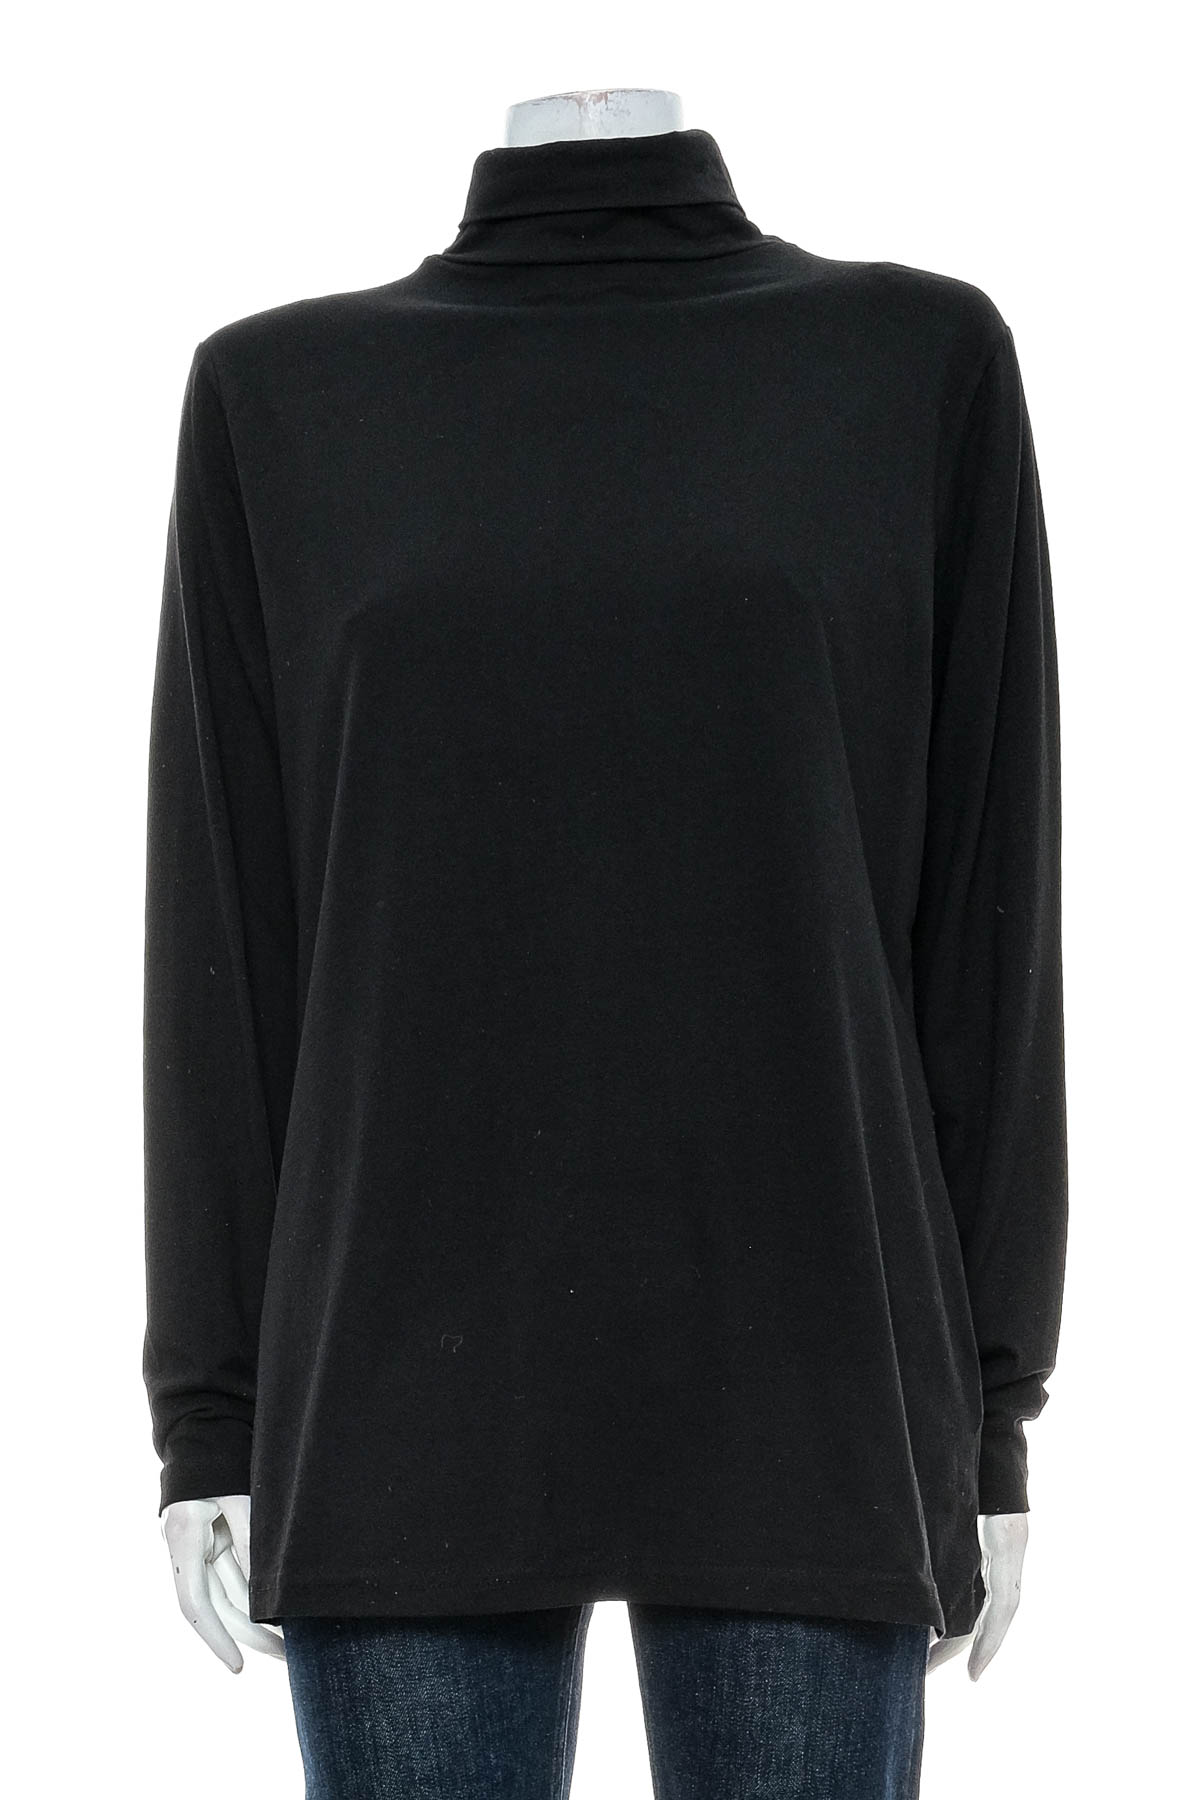 Women's blouse - Bpc Bonprix Collection - 0